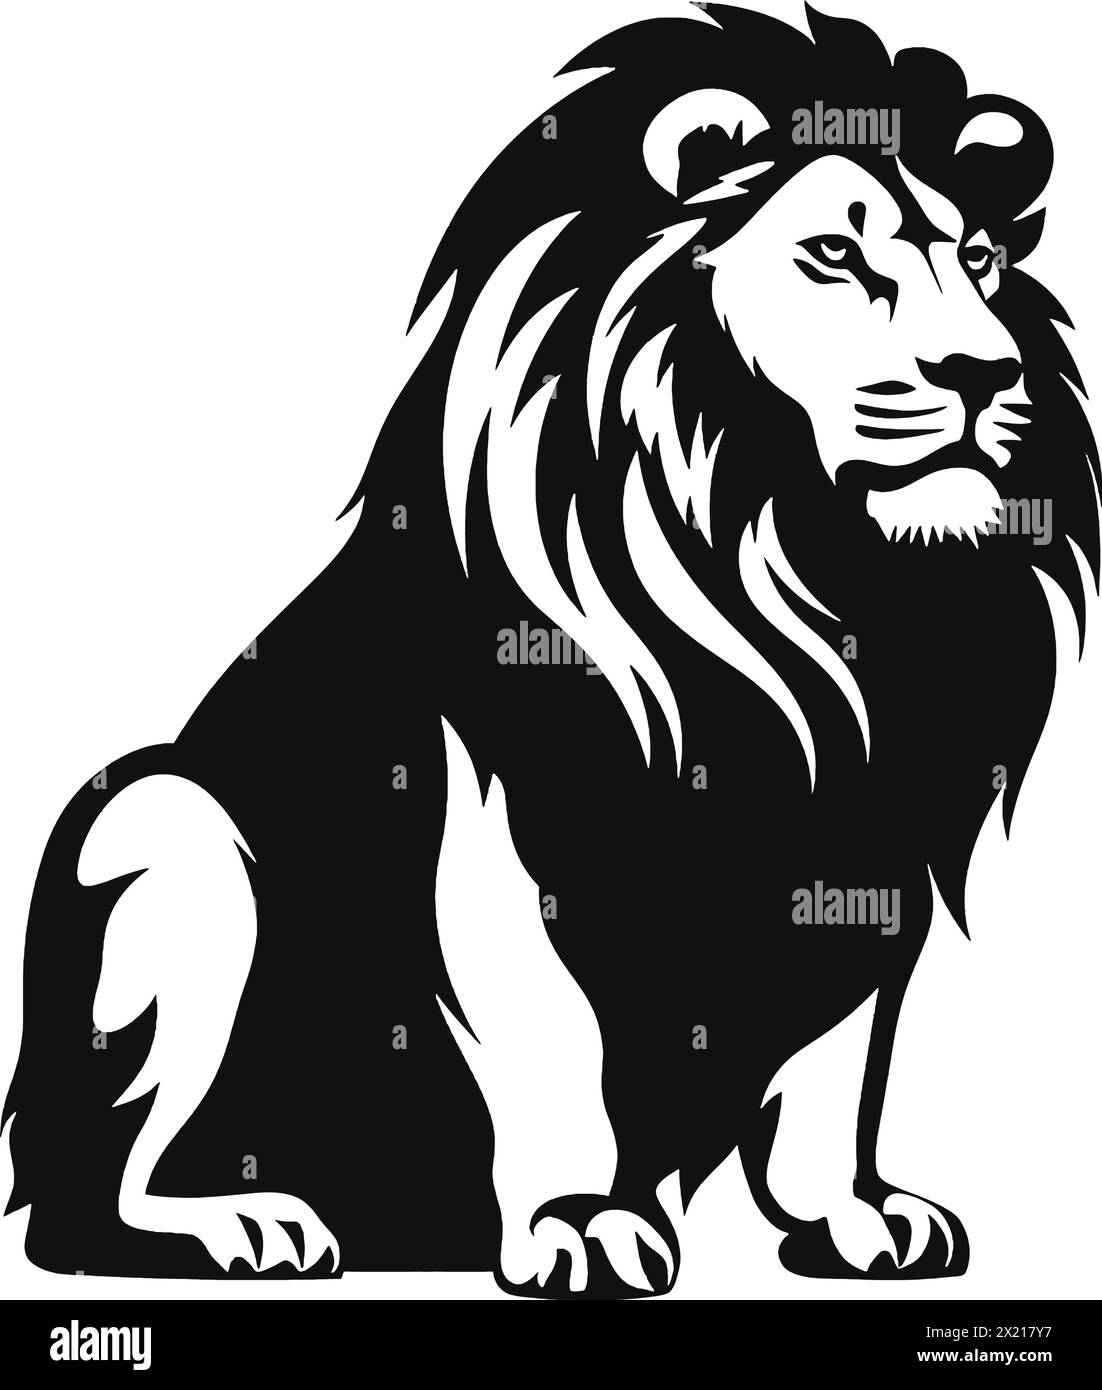 Illustration vectorielle d'un lion en silhouette noire sur un fond blanc propre, capturant des formes gracieuses. Illustration de Vecteur